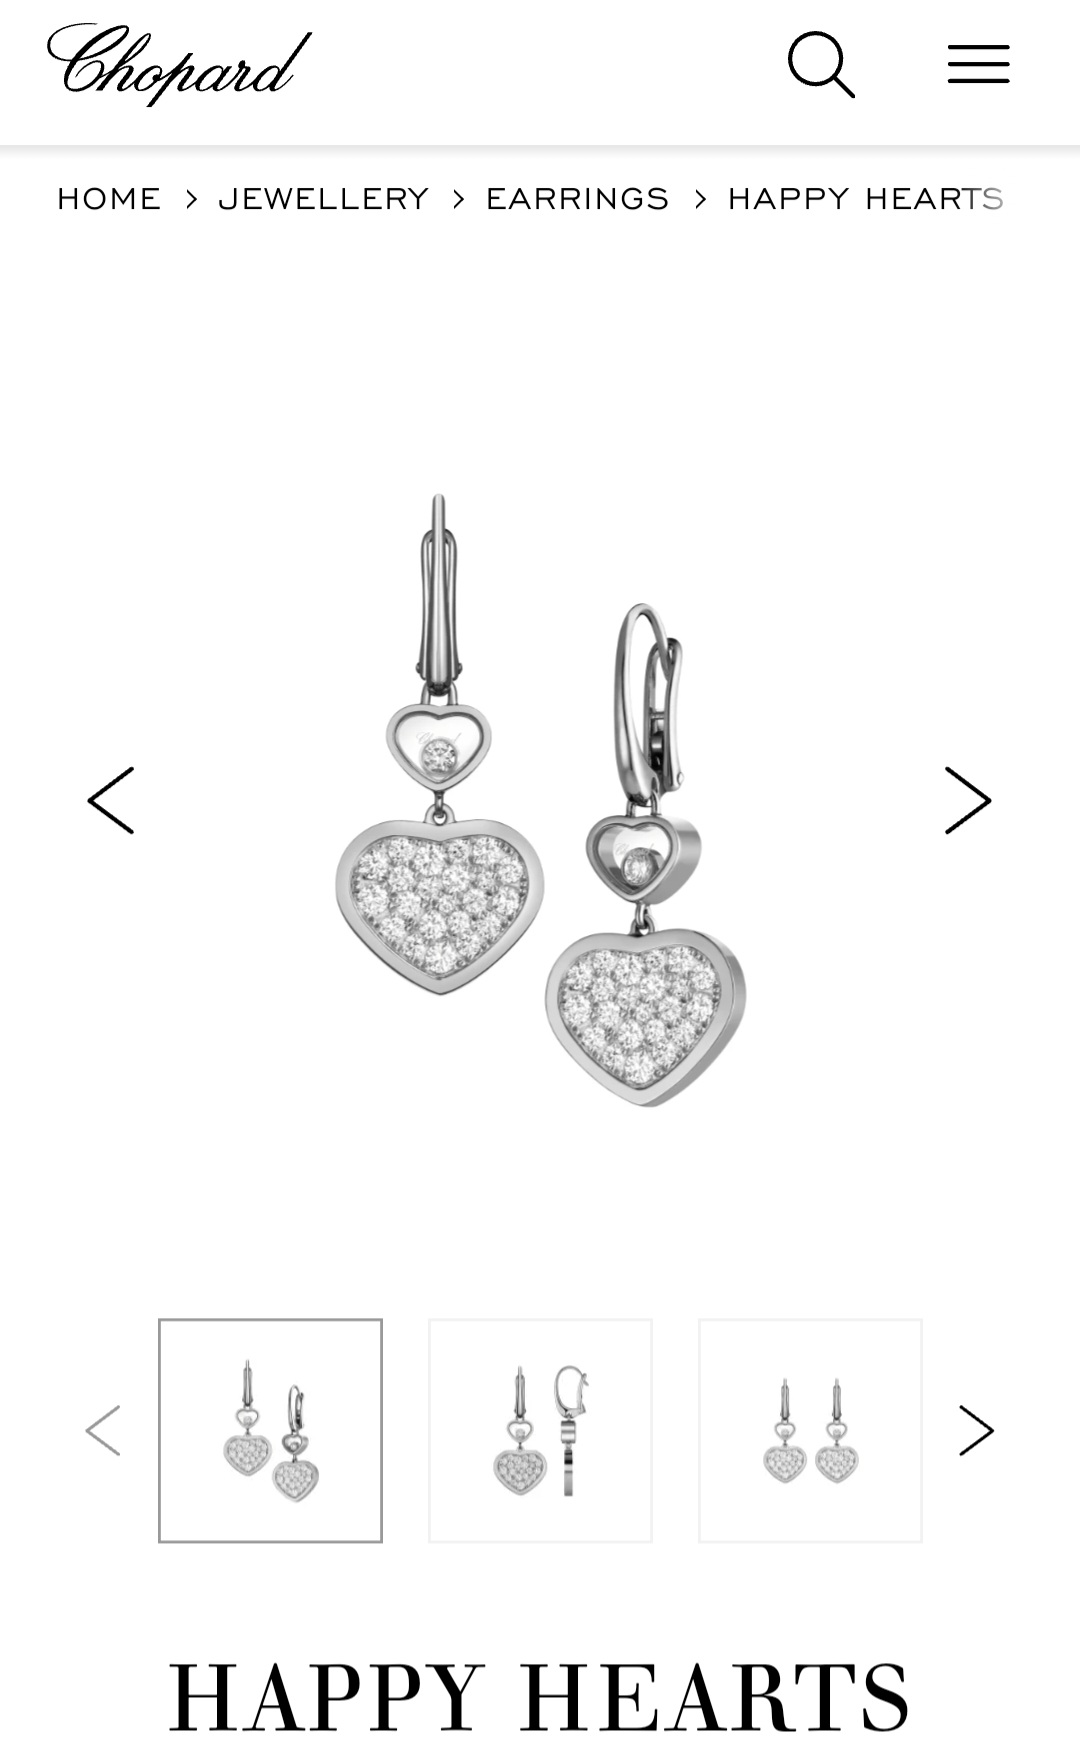 Chopard Happy Heart earrings